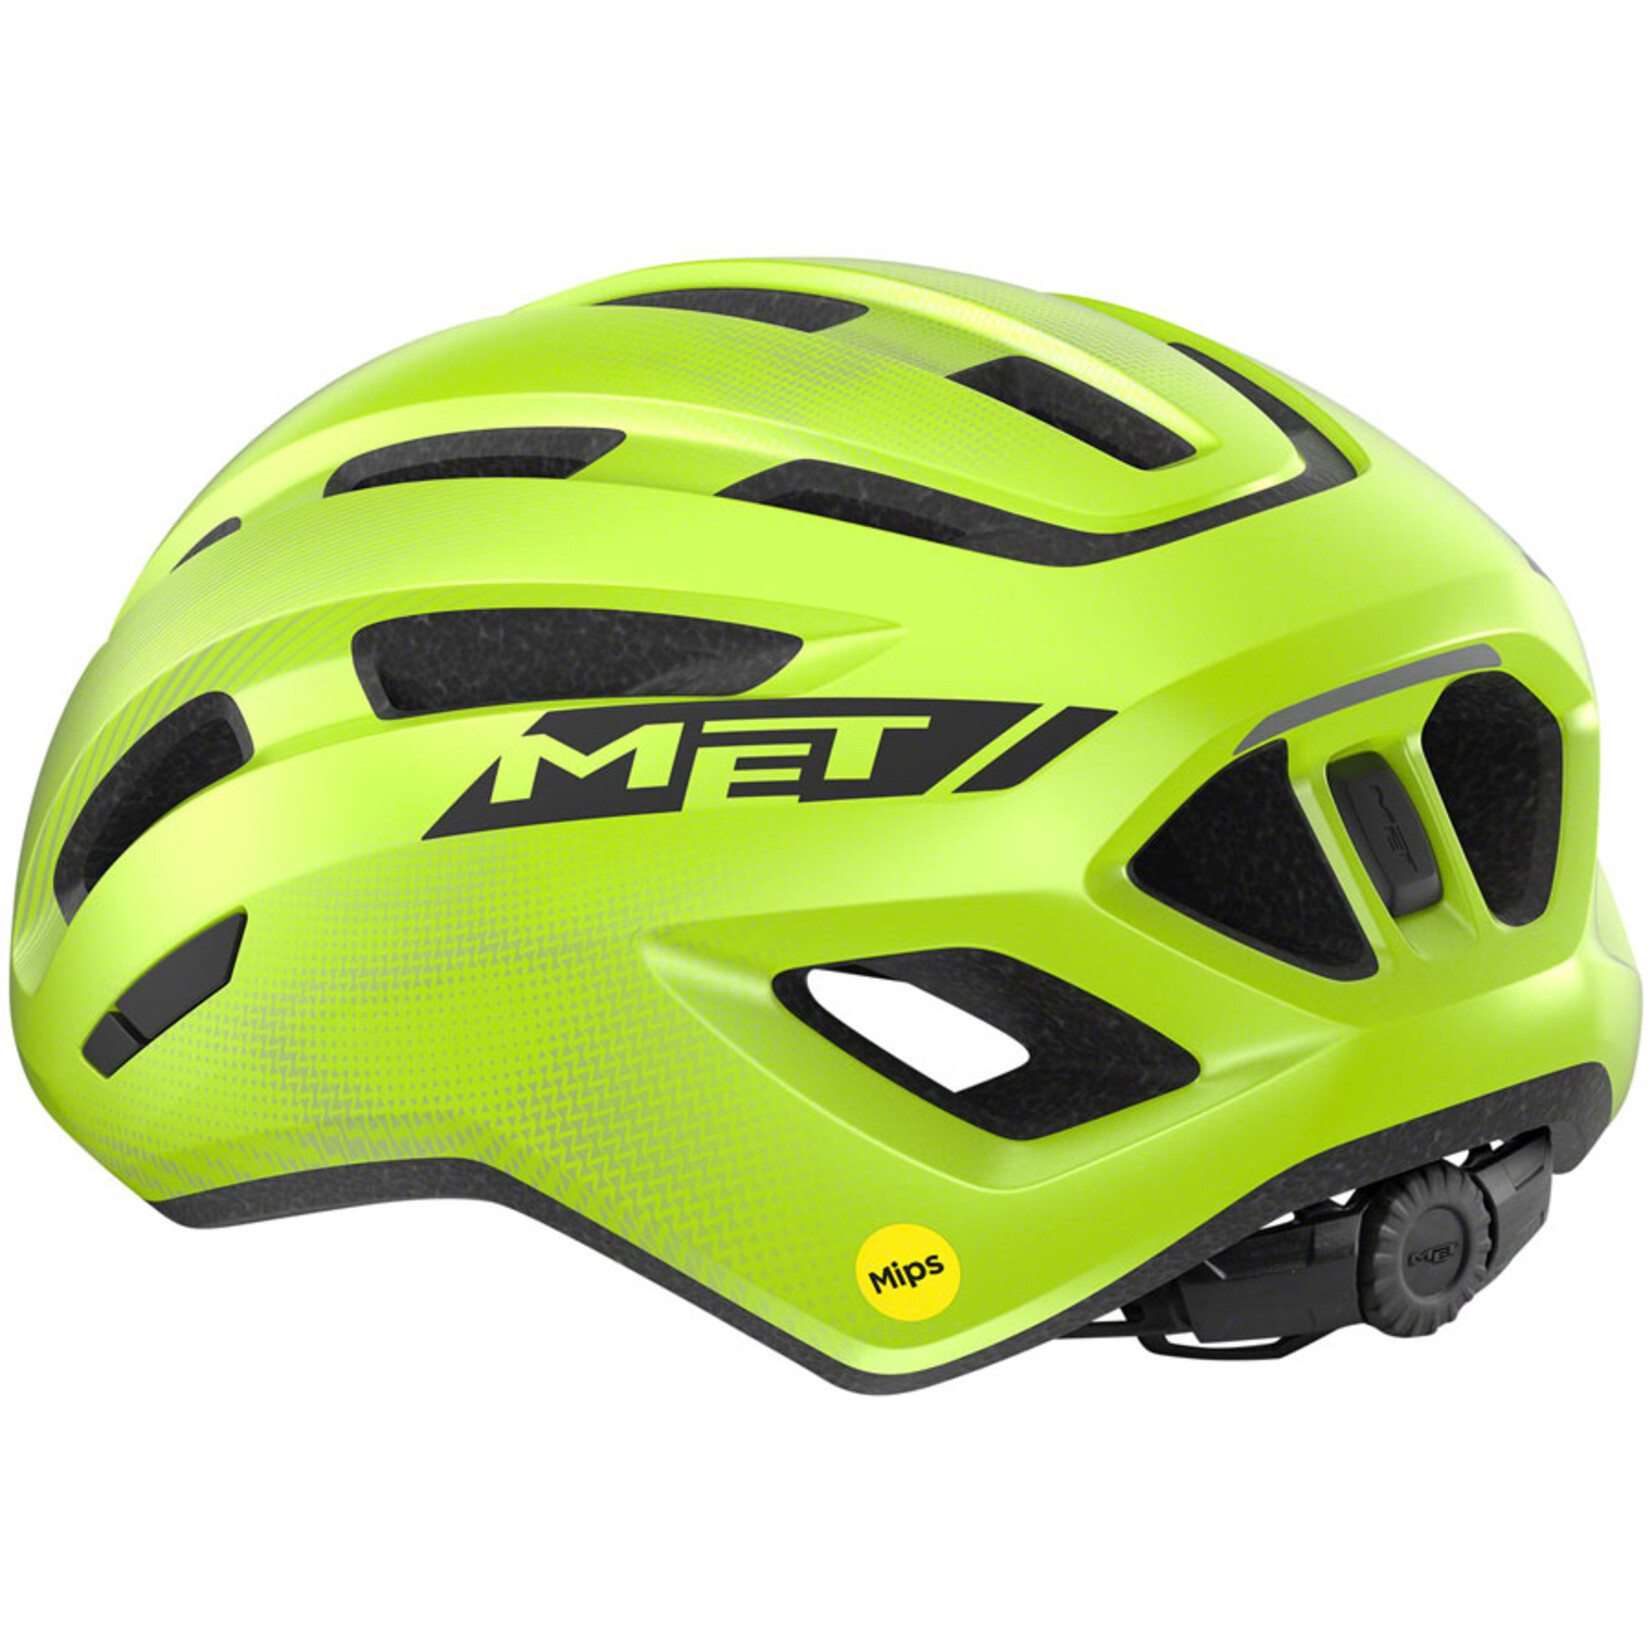 MET Helmets MET Miles MIPS Helmet - Fluorescent Yellow, Glossy, Small/Medium